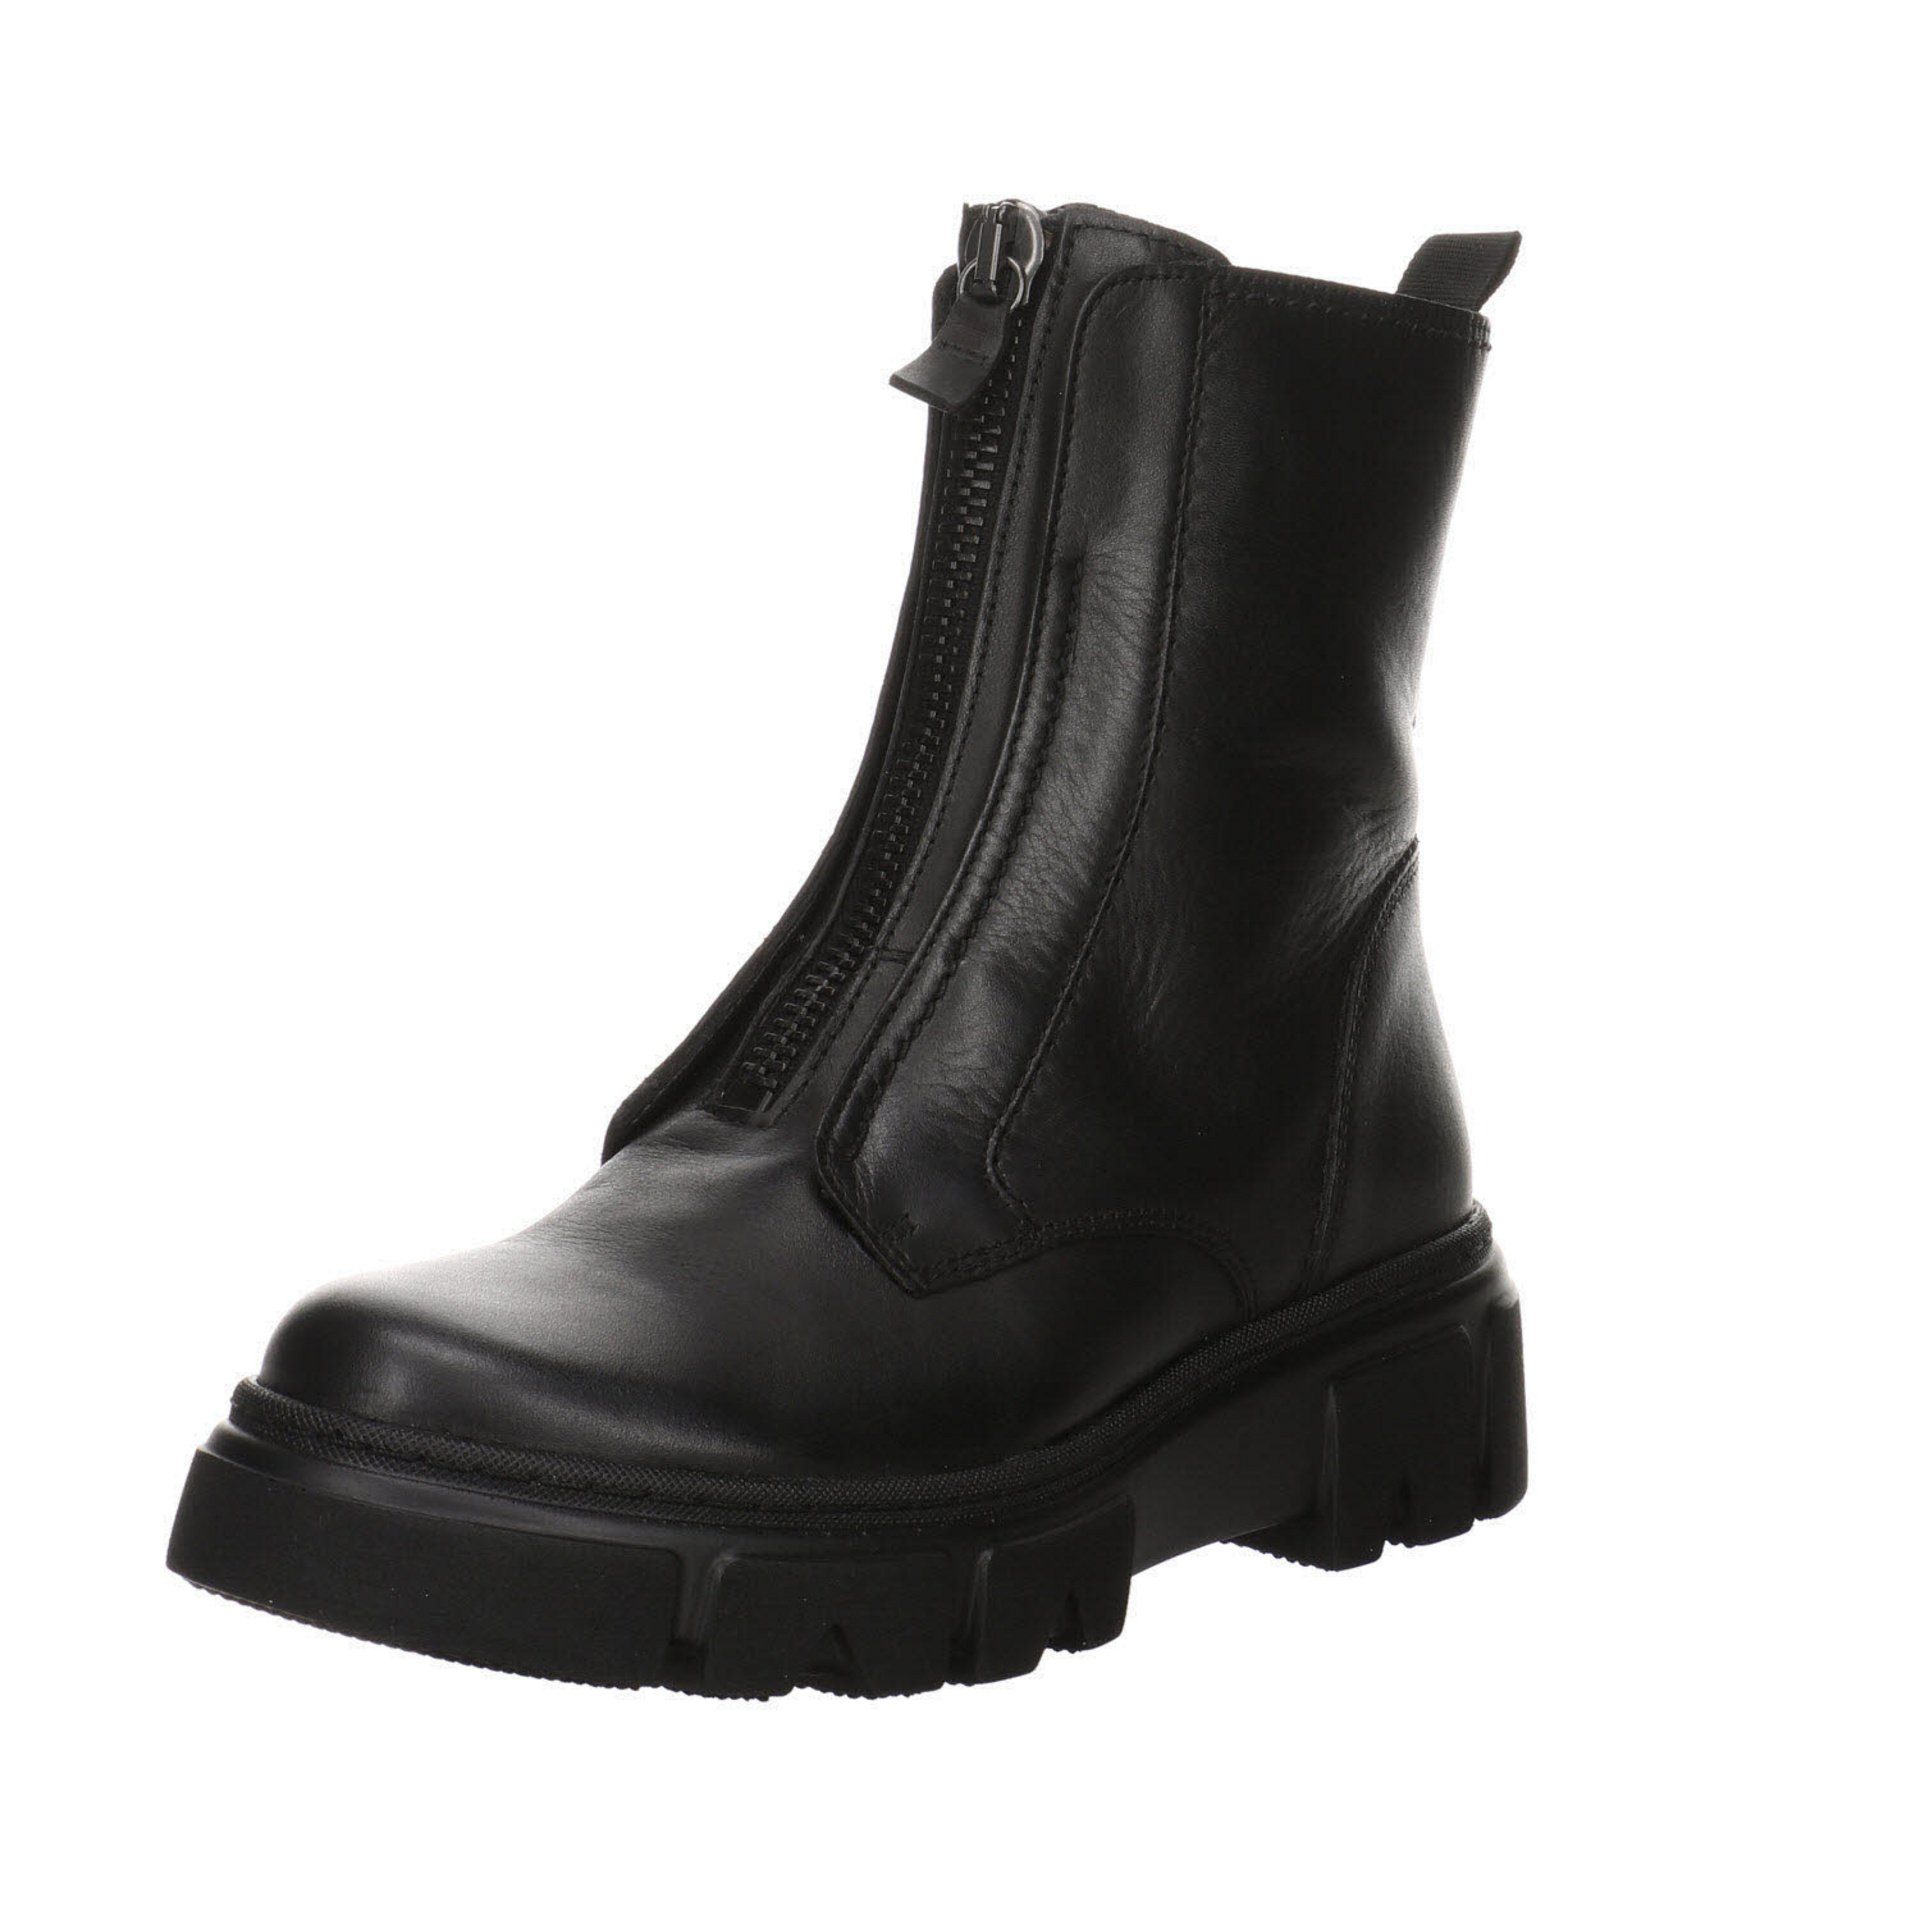 Gabor Damen Stiefelette Stiefeletten schwarz(altsilber) Freizeit Boots Glattleder Schuhe Elegant